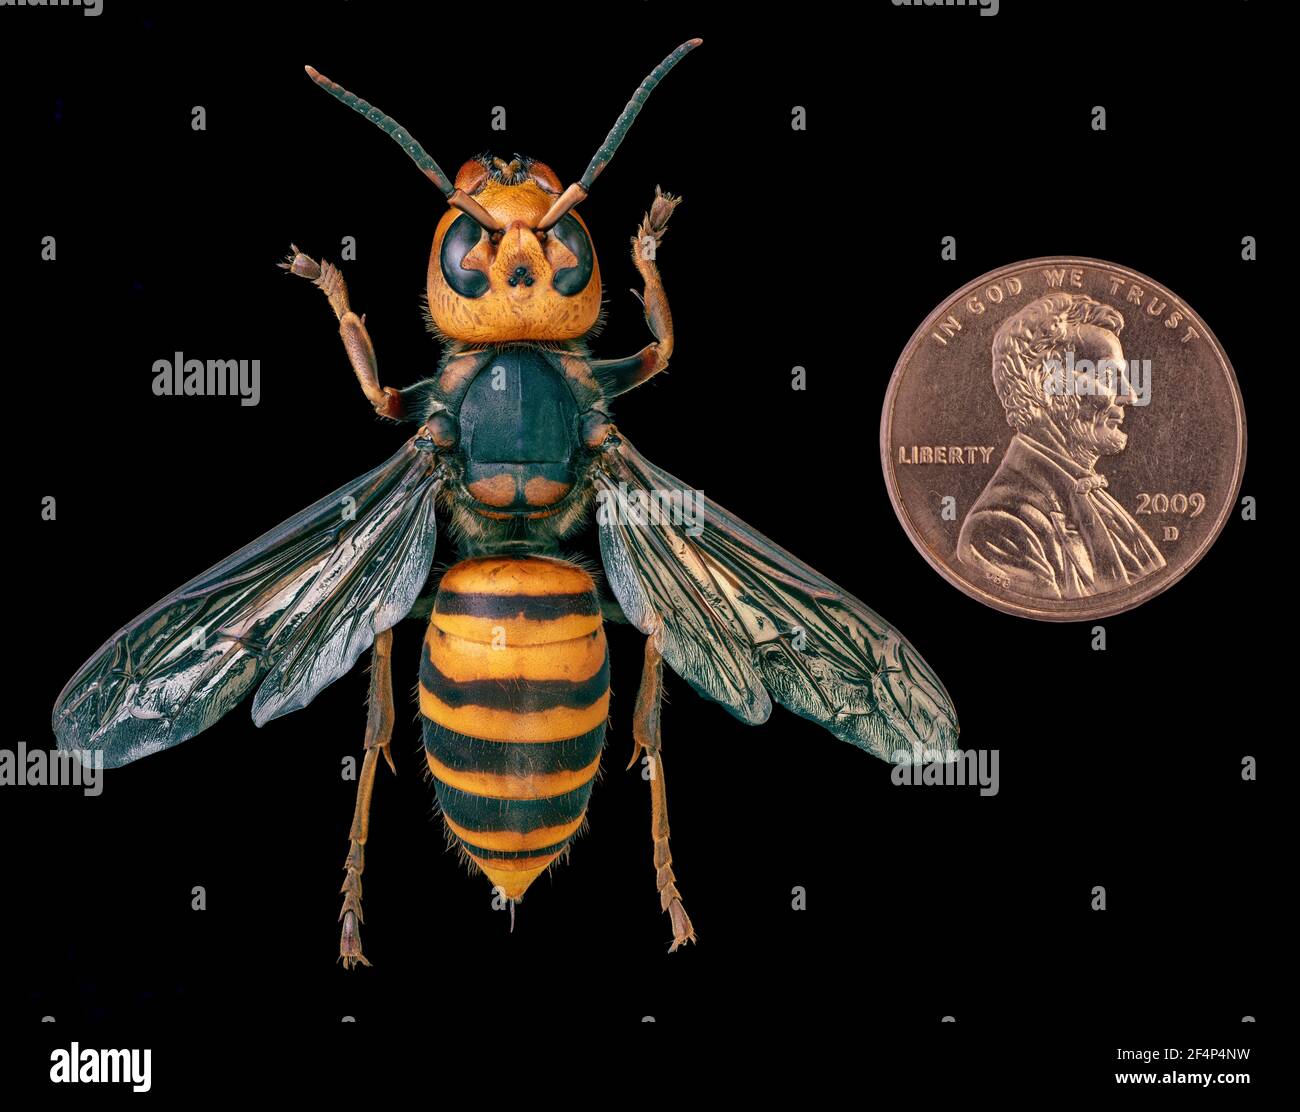 Asian Giant Hornet, Japanese giant hornet, also Murder Hornet (Vespa mandarinia) Stock Photo